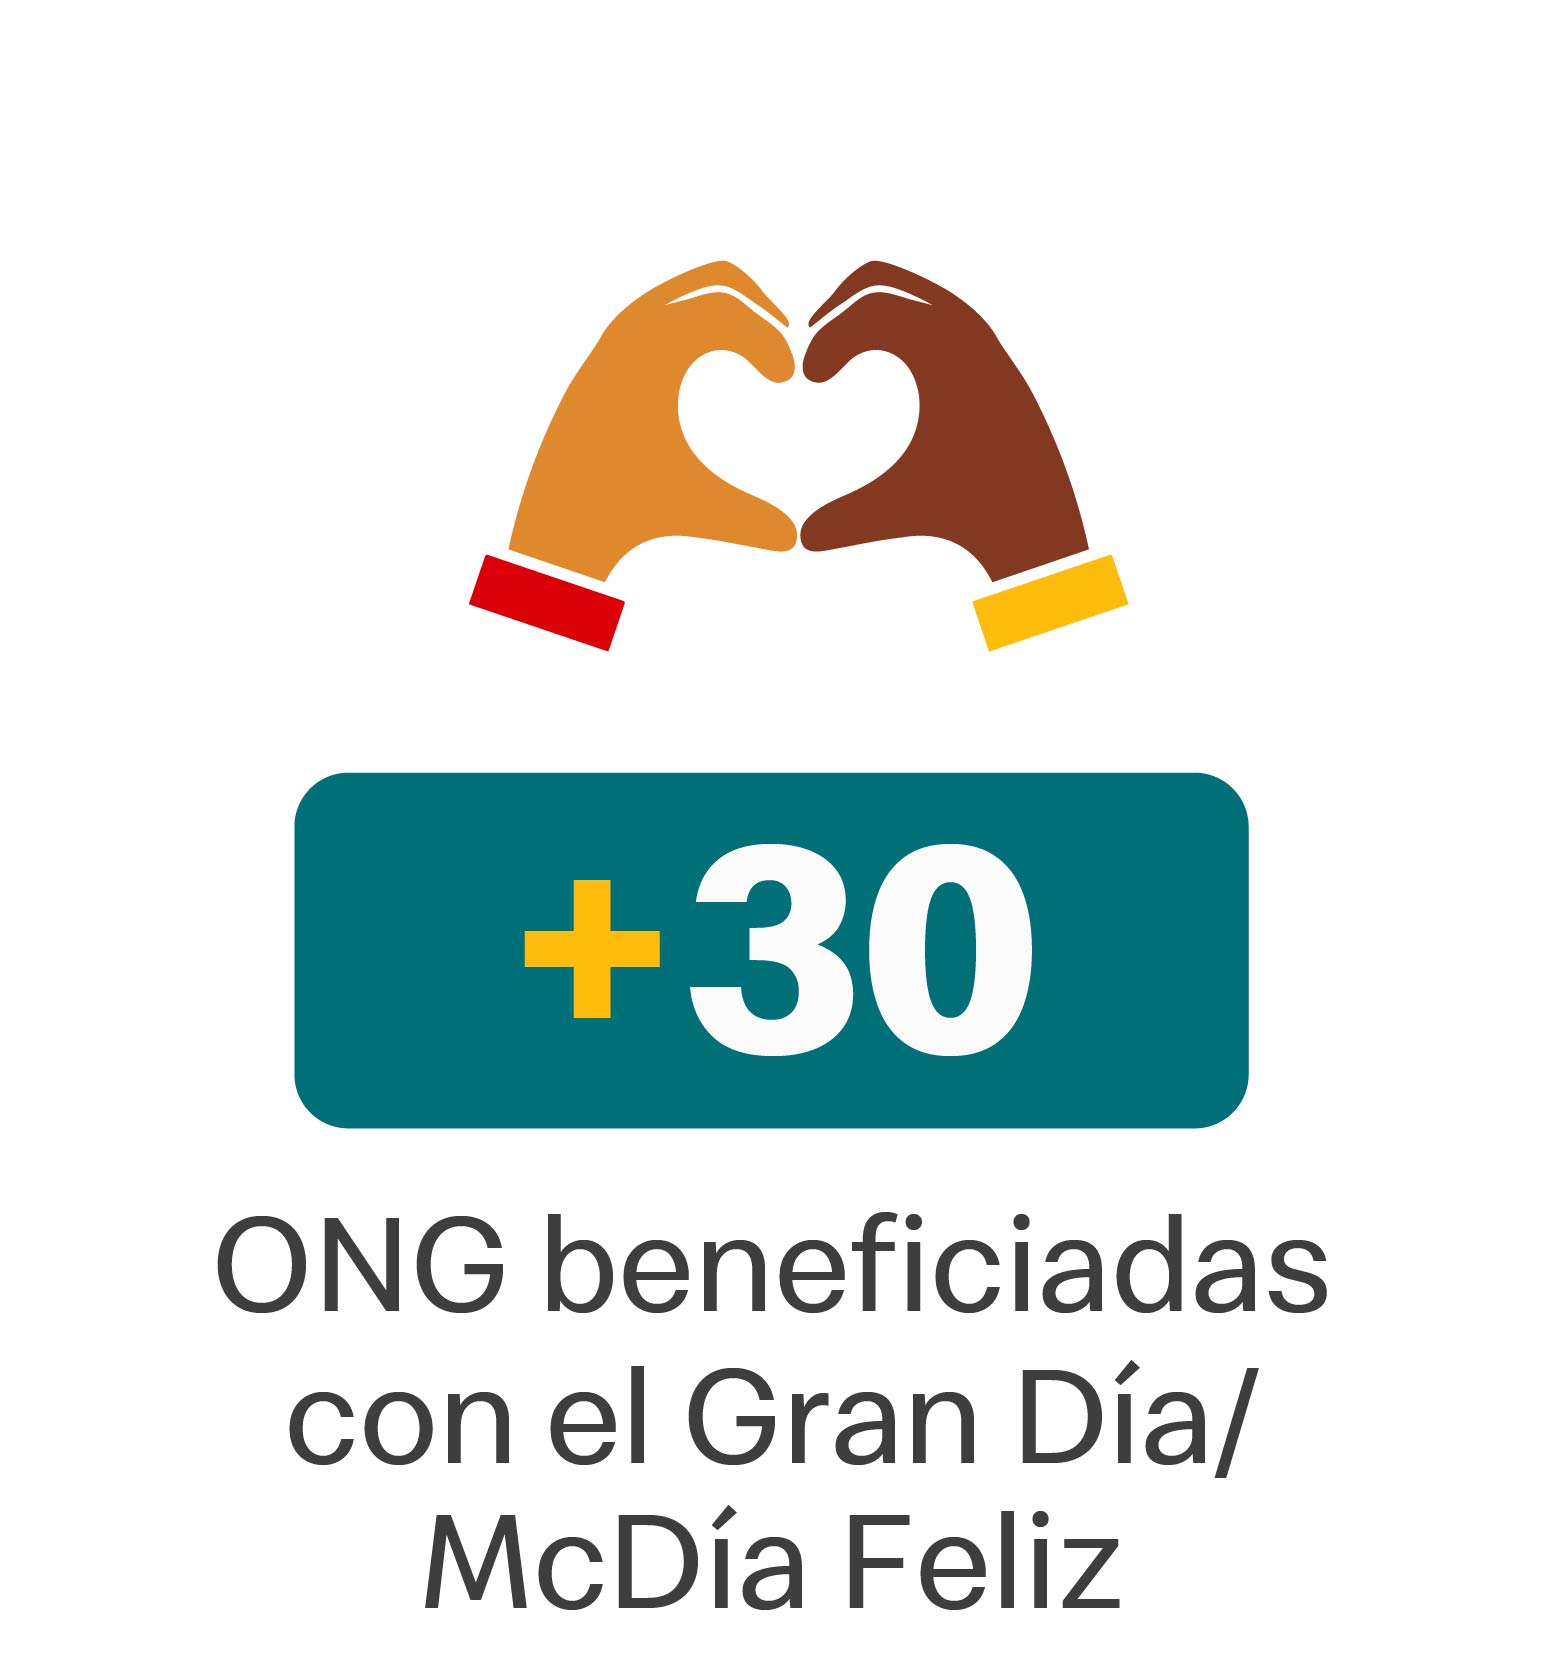 39 ONG beneficiadas con el Gran Día: McDía Feliz